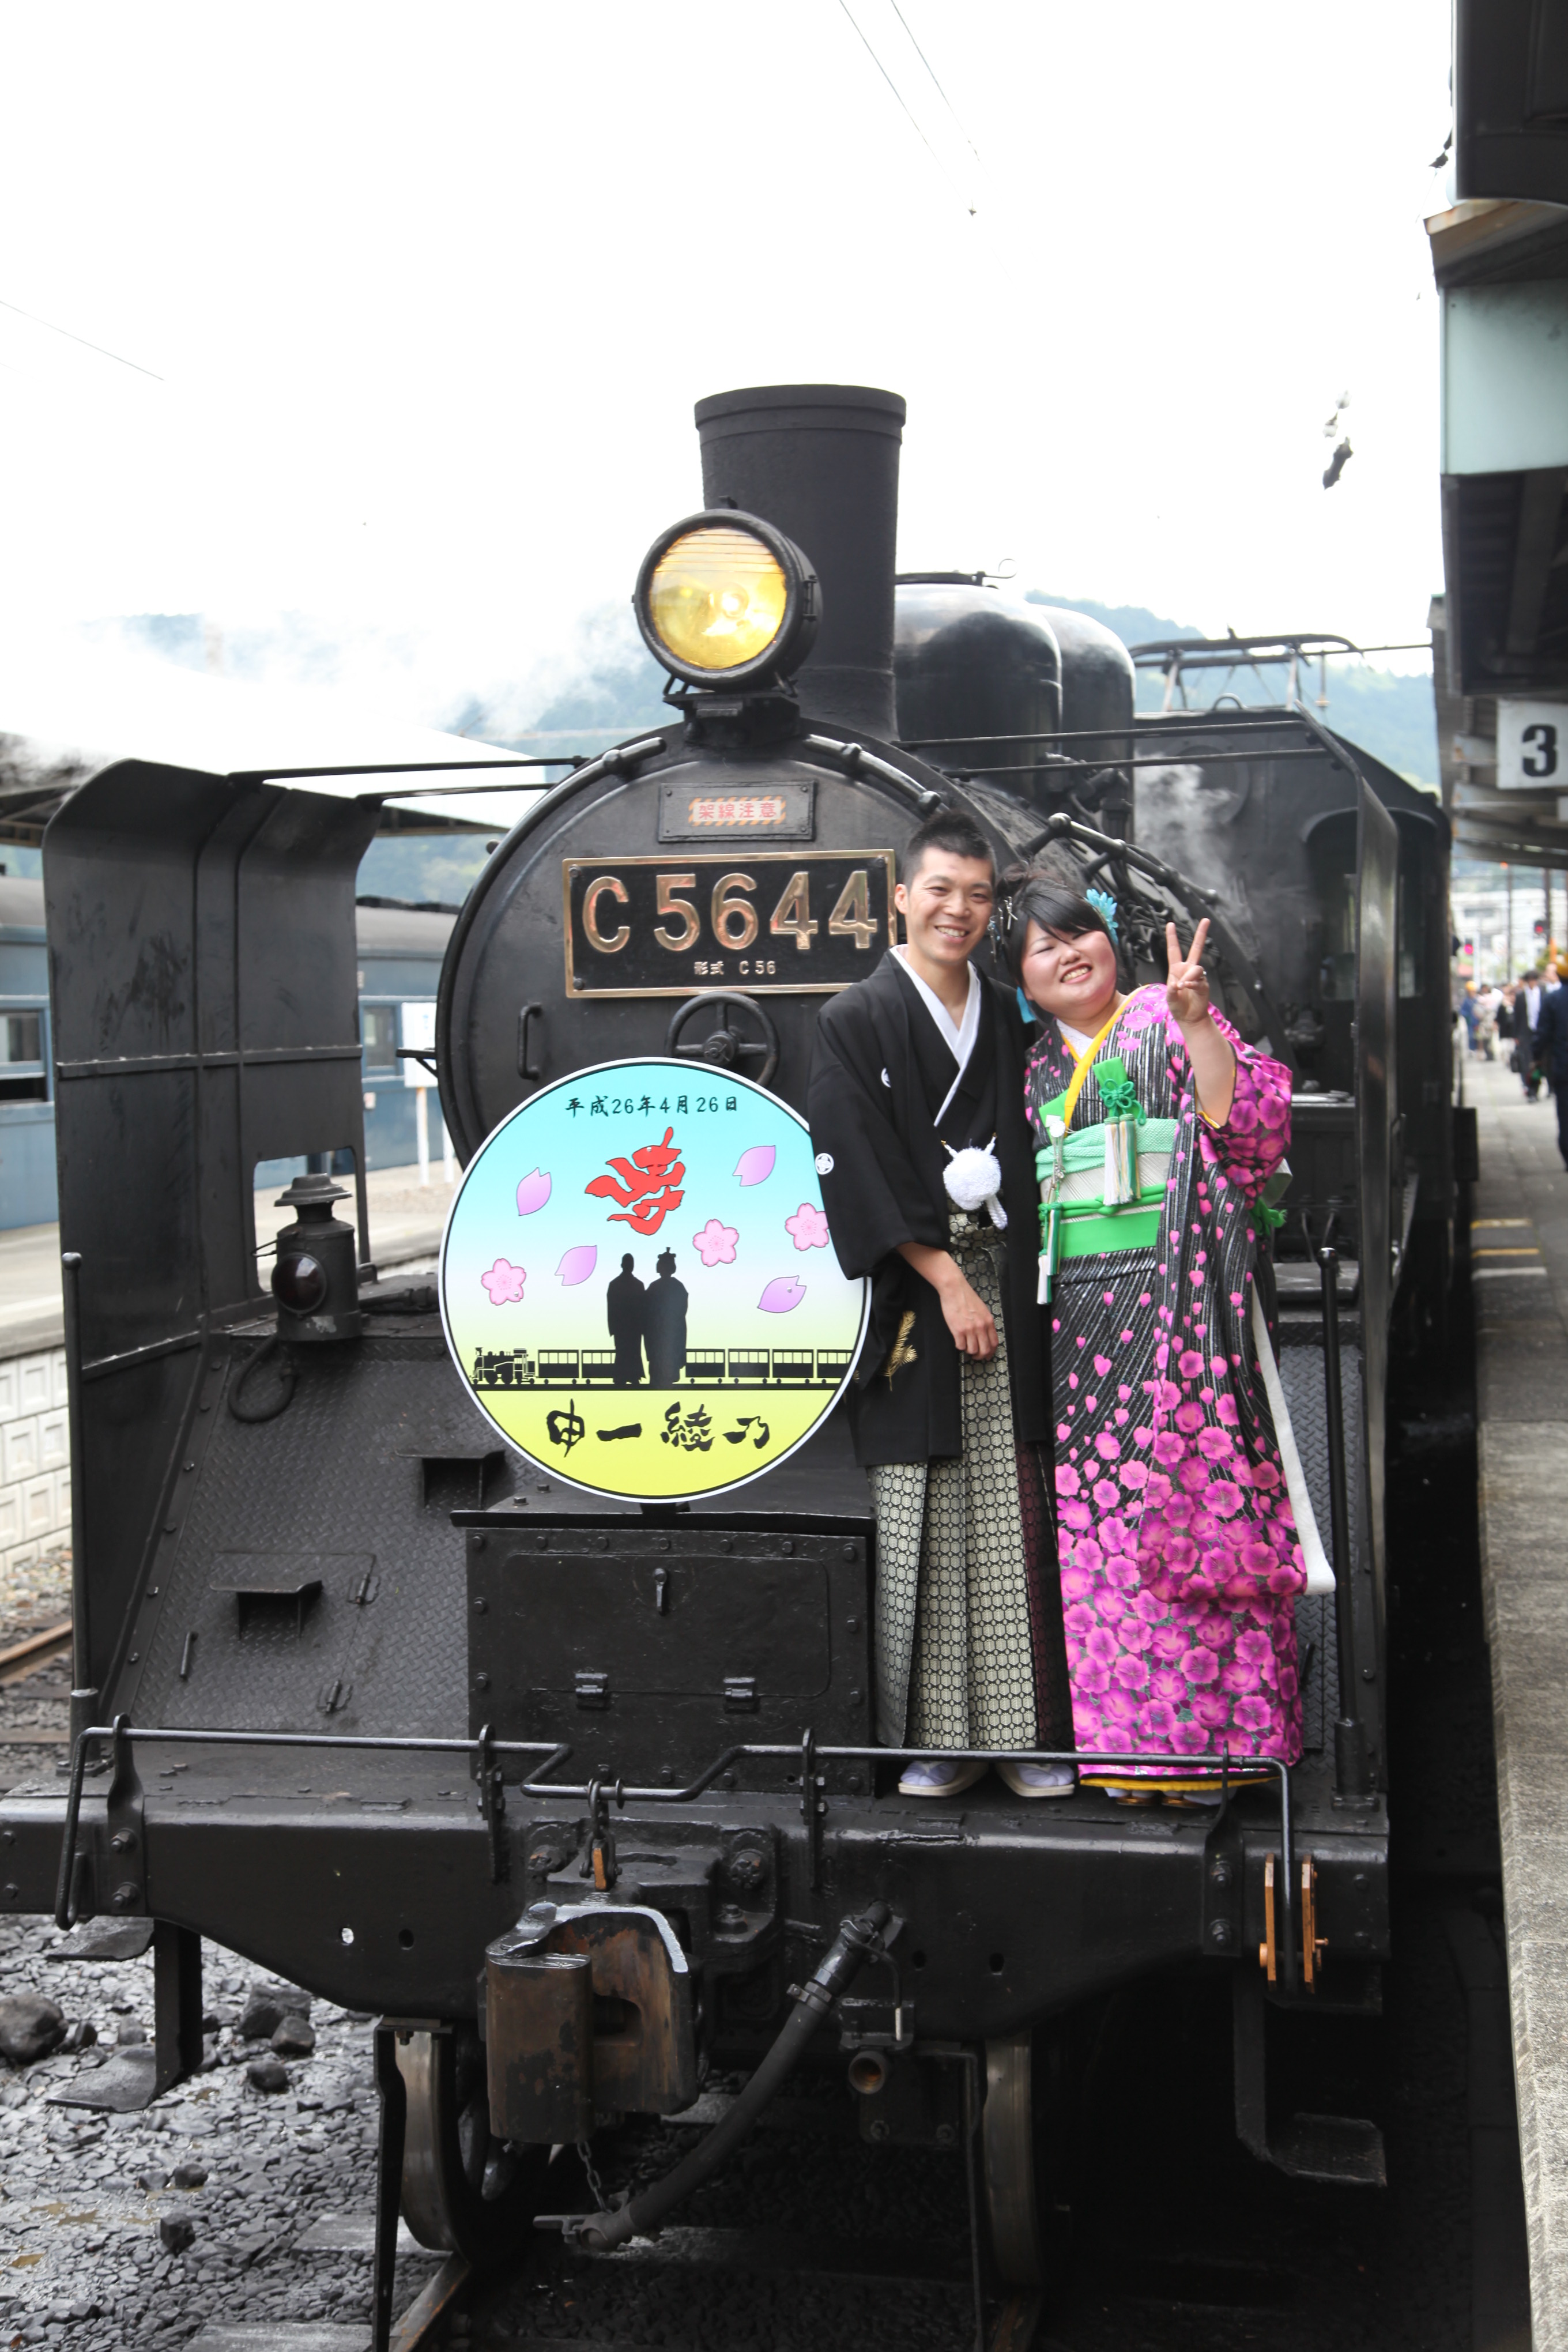 日本旅行 大井川鐵道 ｓｌブライダルトレイン パッケージプランが 鉄旅オブザイヤー２０１４ 審査員特別賞を受賞 株式会社 日本旅行 のプレスリリース